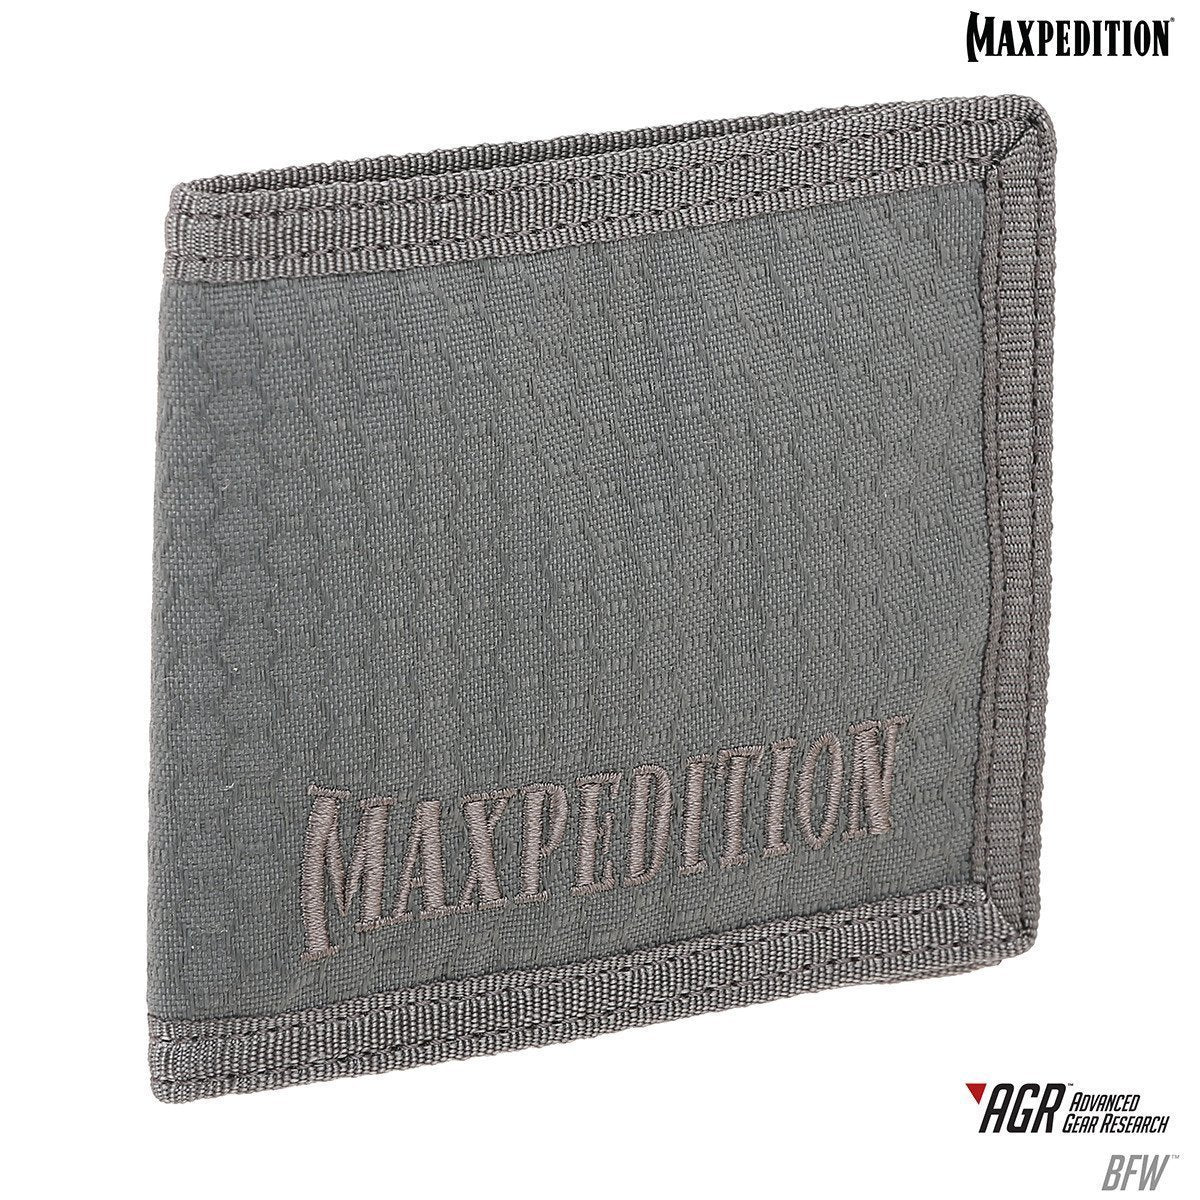 Maxpedition BFW Bi-Fold Wallet Accessories Maxpedition Tactical Gear Supplier Tactical Distributors Australia